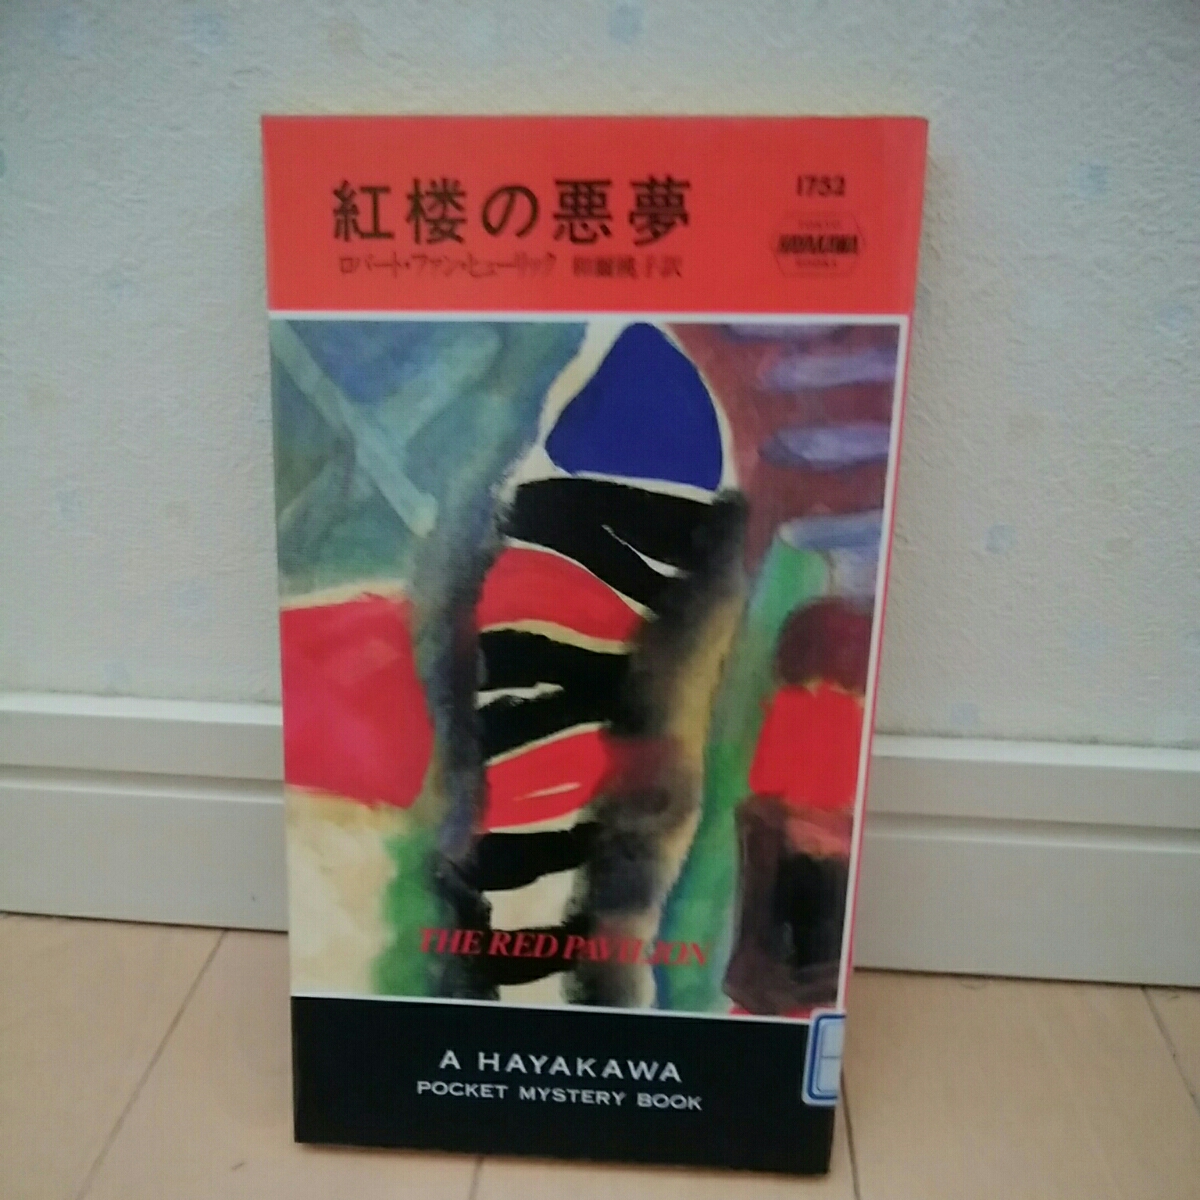 ... bad dream Robert fan hyu-lik. river bookstore except . books Hayakawa mystery 180422